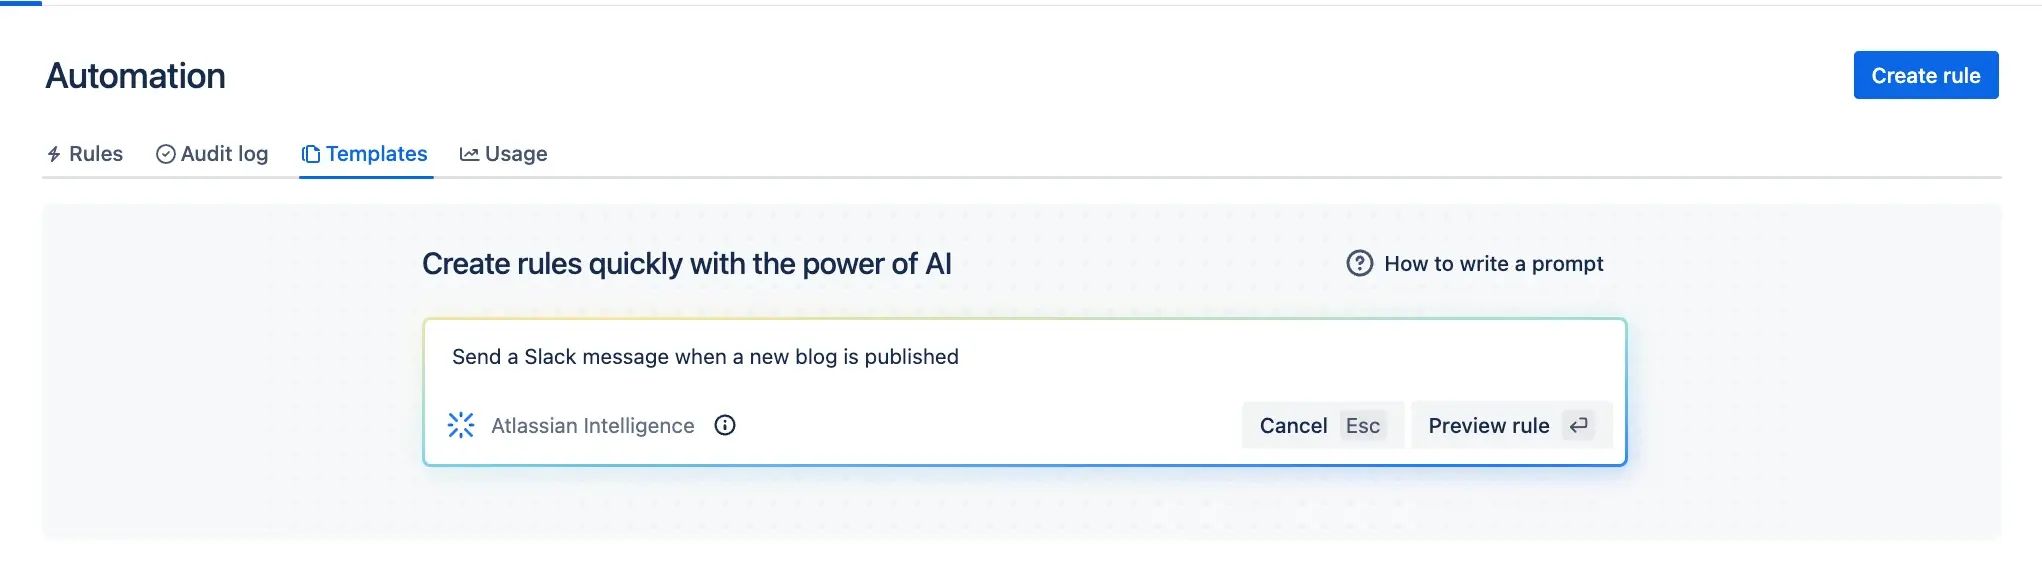 Exemplo 1 de automação de IA da Atlassian